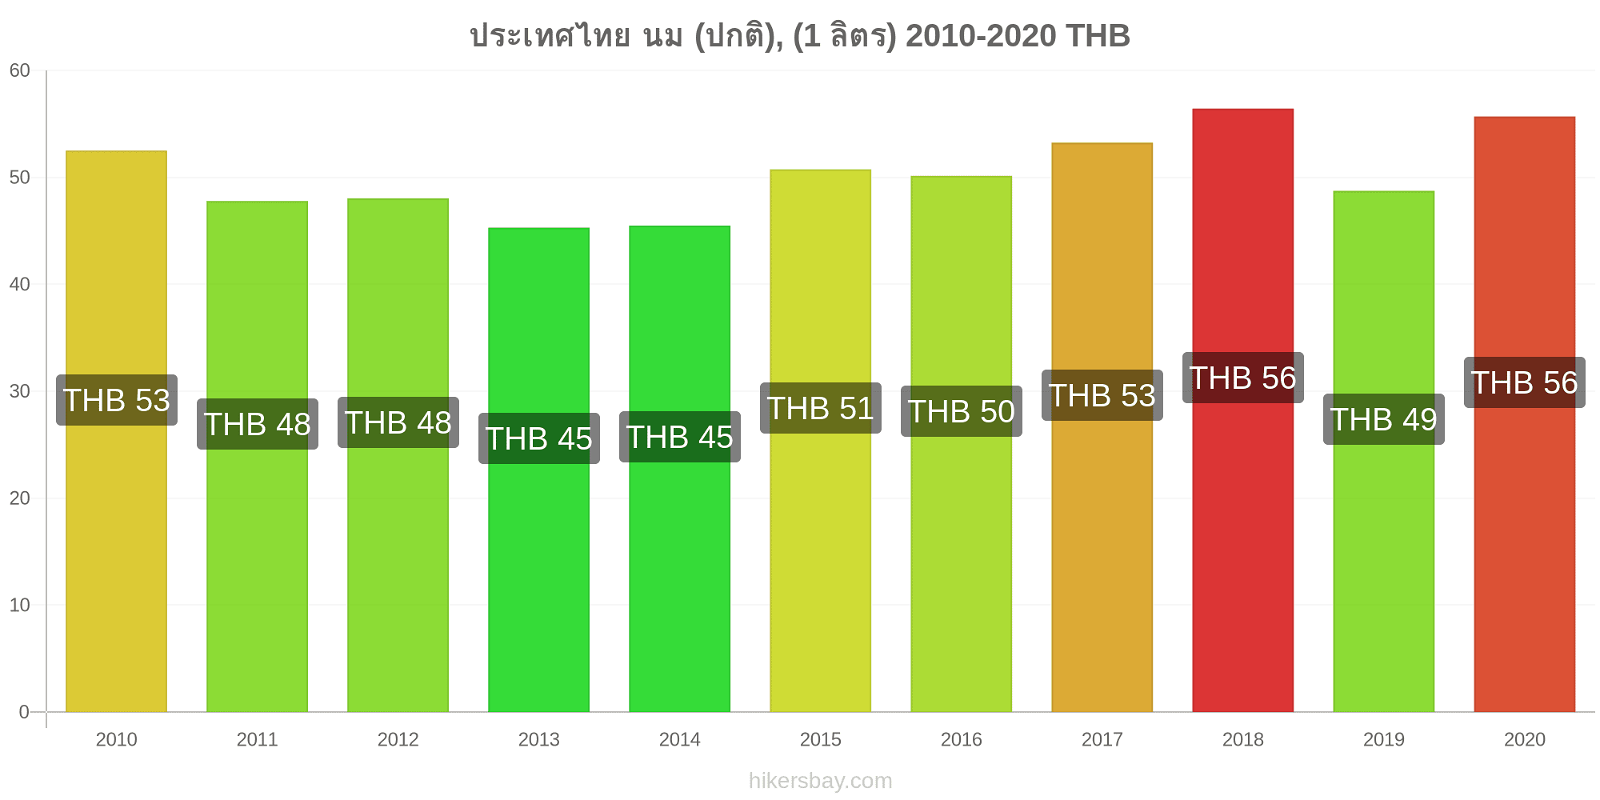 ประเทศไทย การเปลี่ยนแปลงราคา นม (ปกติ), (1 ลิตร) hikersbay.com